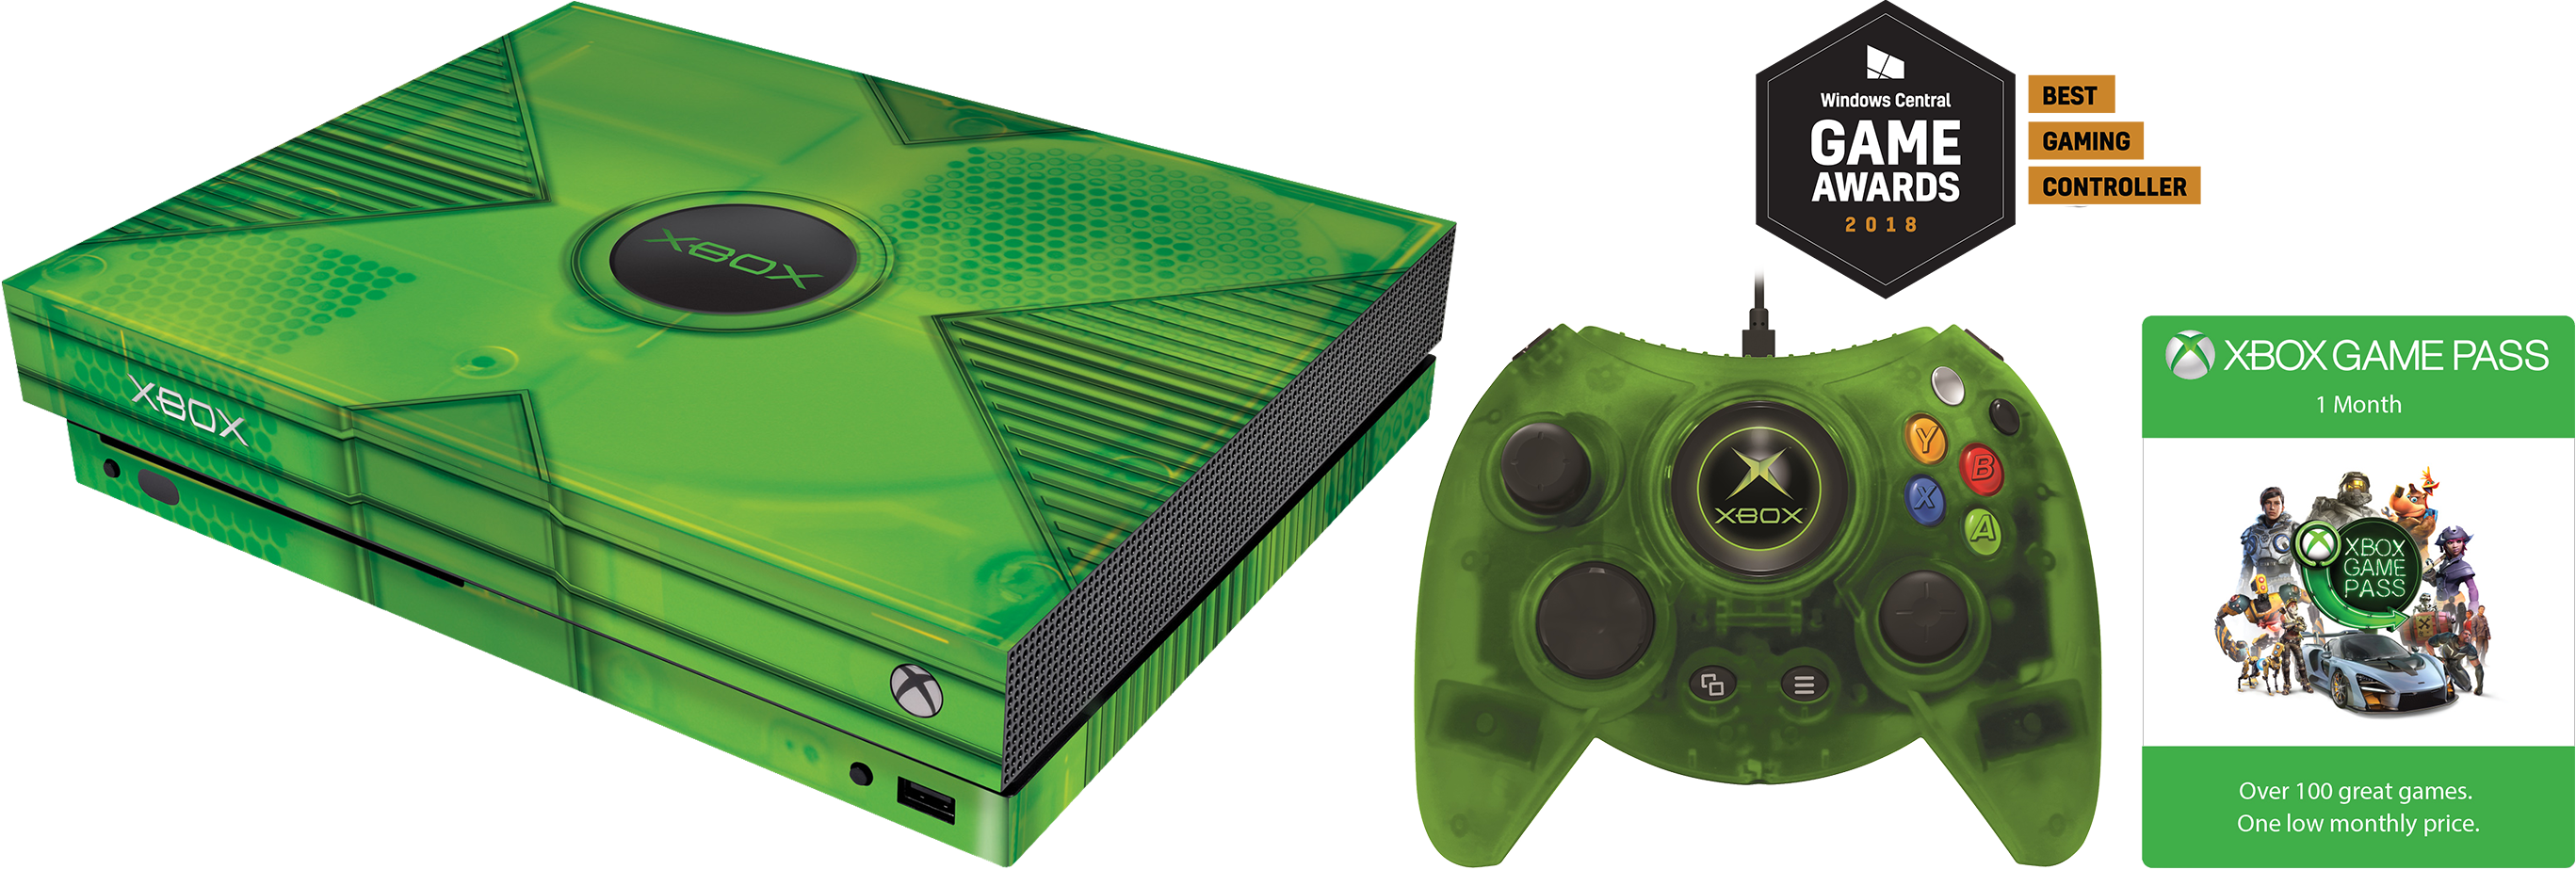 Купить икс бокс пасс. Xbox 360 Classics. Иксбокс 360 Ван. Икс бокс 360 Классик. Икс бокс 180.